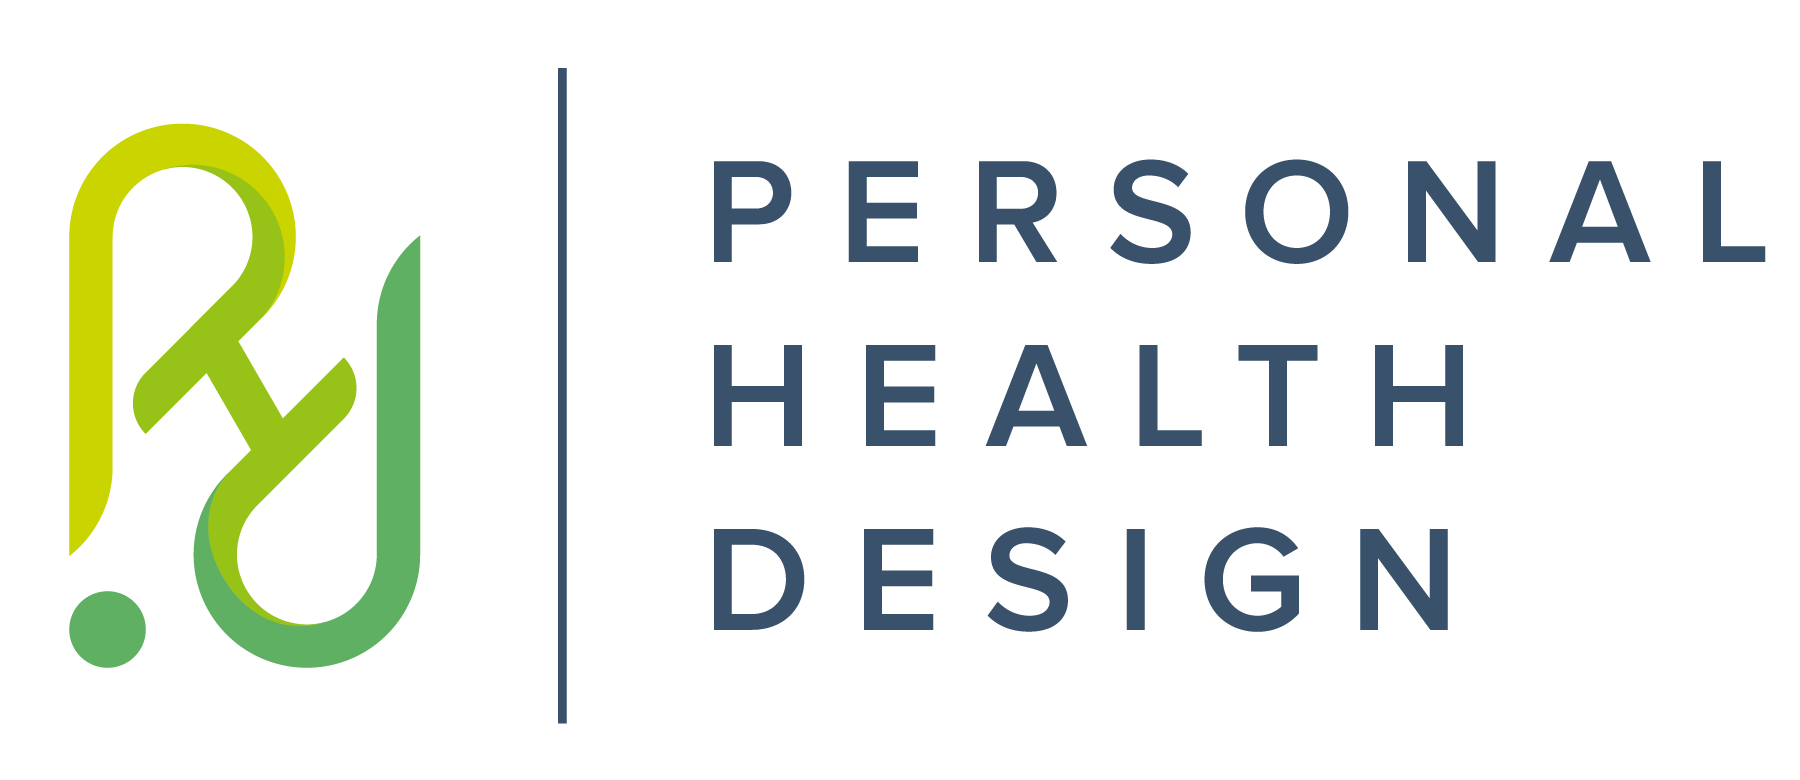 Personal Health Design